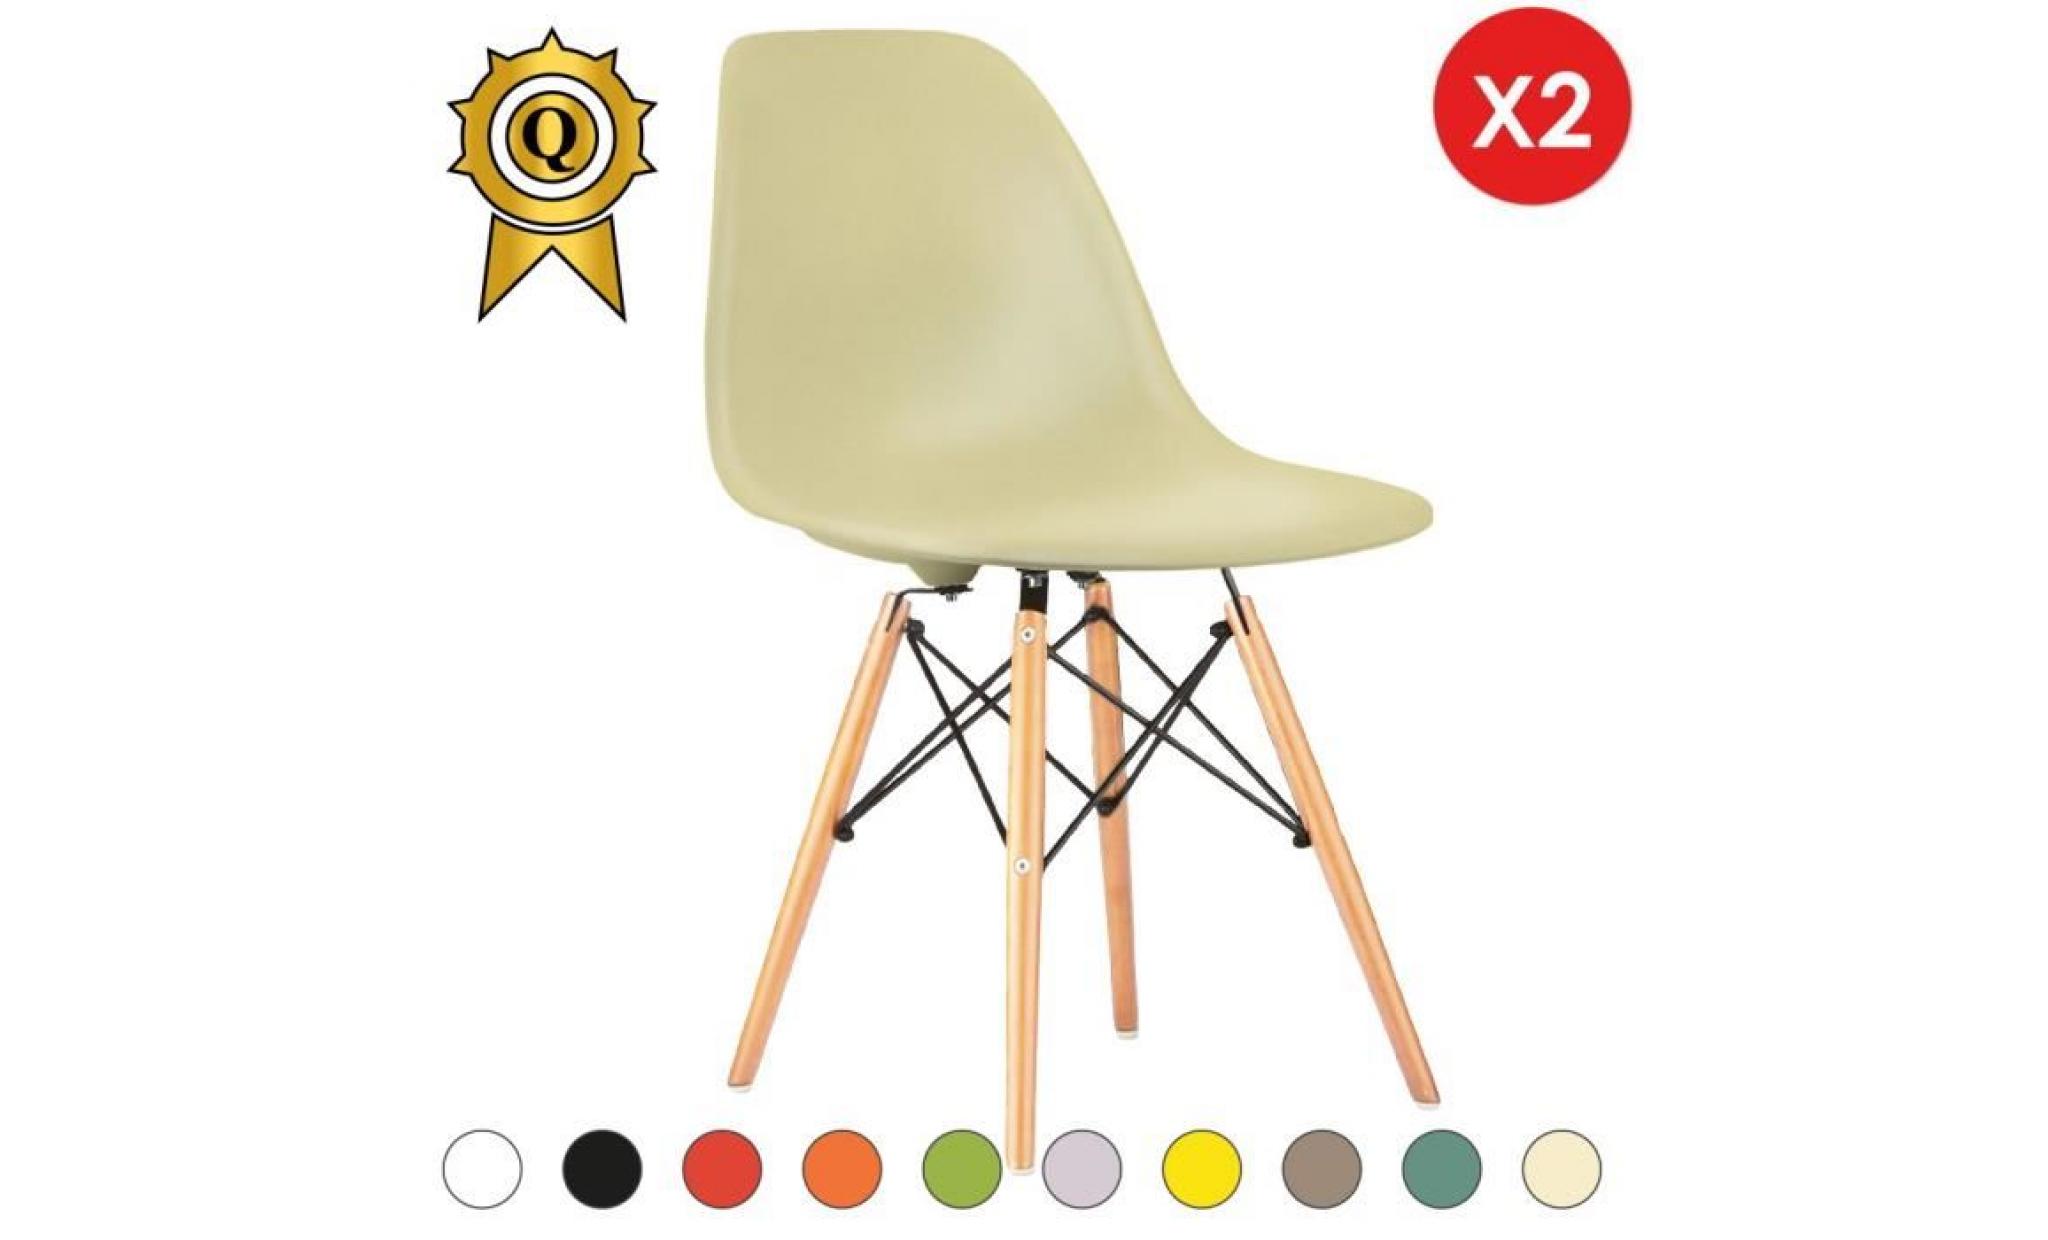 2 x chaise design inspiration eames dsw bois naturel blanc ivoire mobistyl®